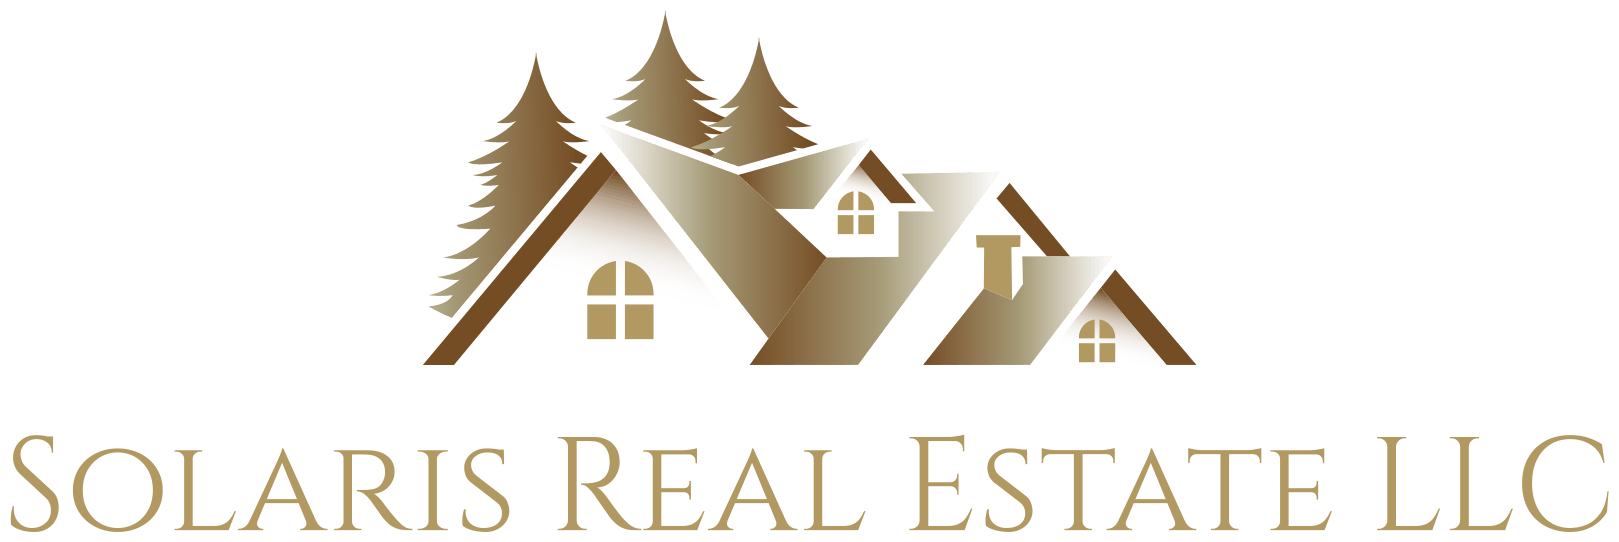 Solaris Real Estate LLC